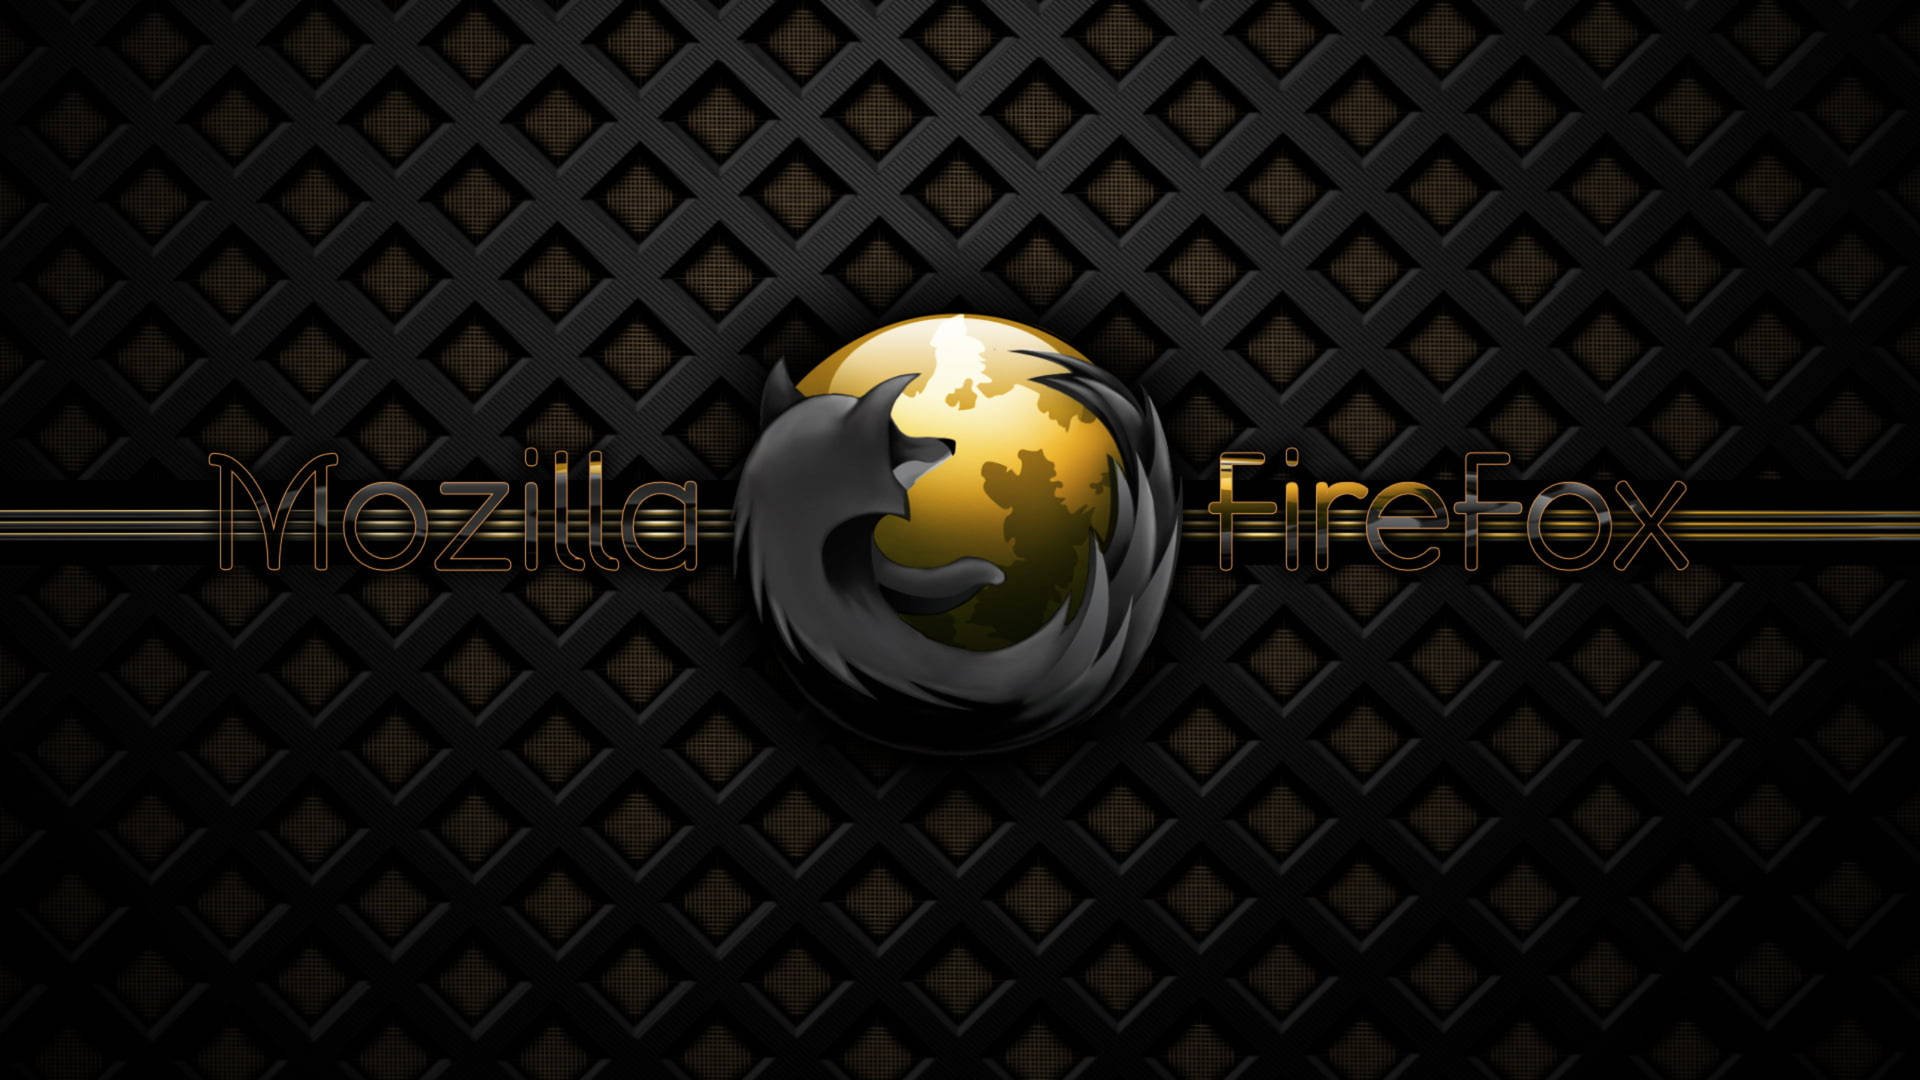 Mozilla Firefox I Sort og Guld. Wallpaper